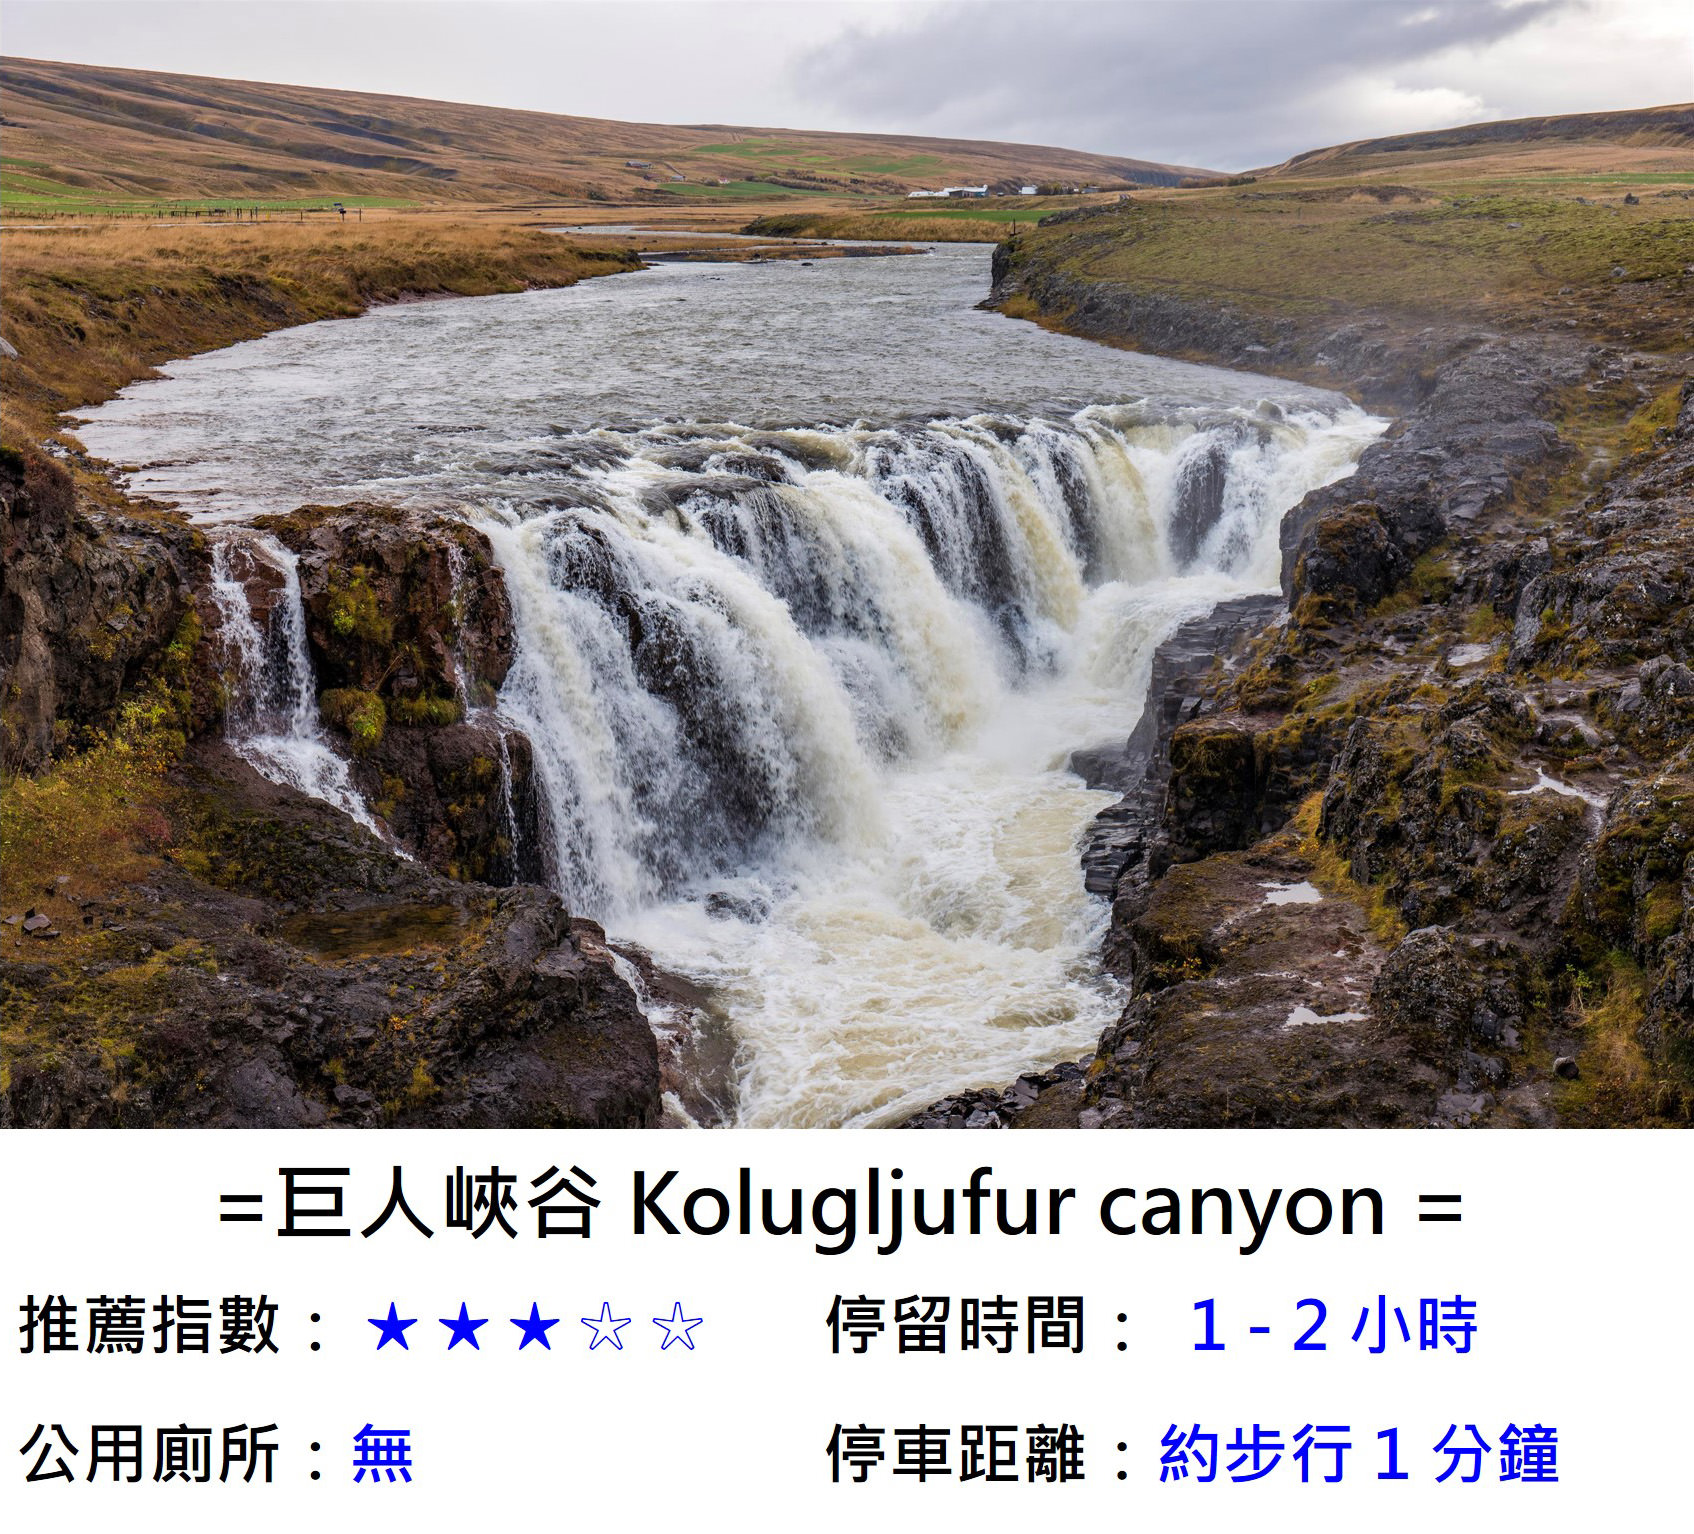 [冰島] 巨人峽谷 Kolugljufur canyon ,神話巨人 Kola 住所，冰島北邊環島景點